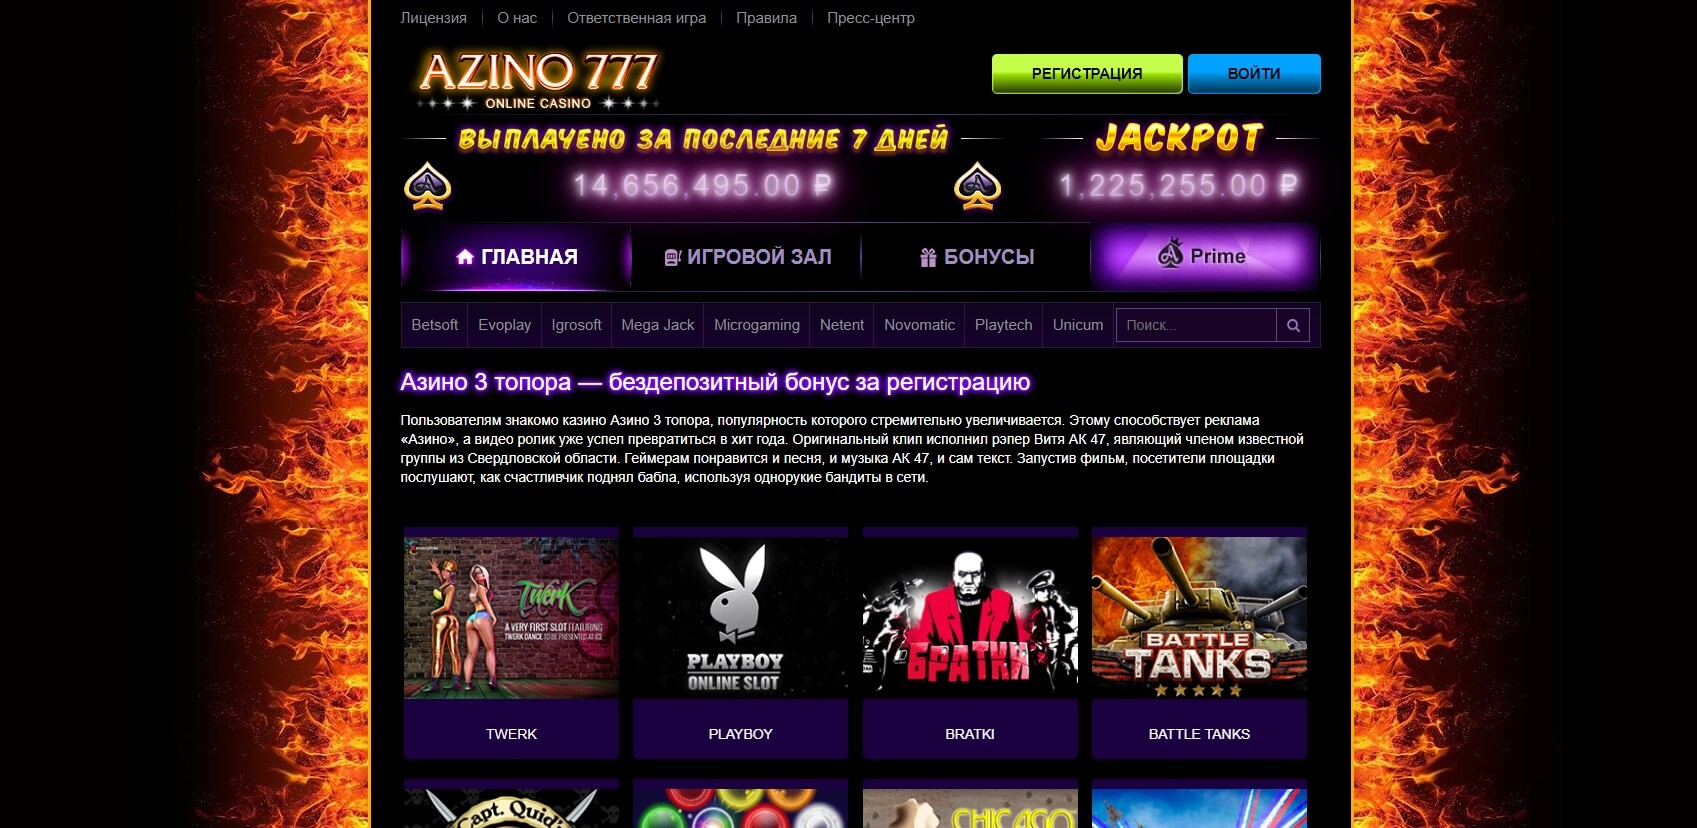 2 azino777 официальный сайт